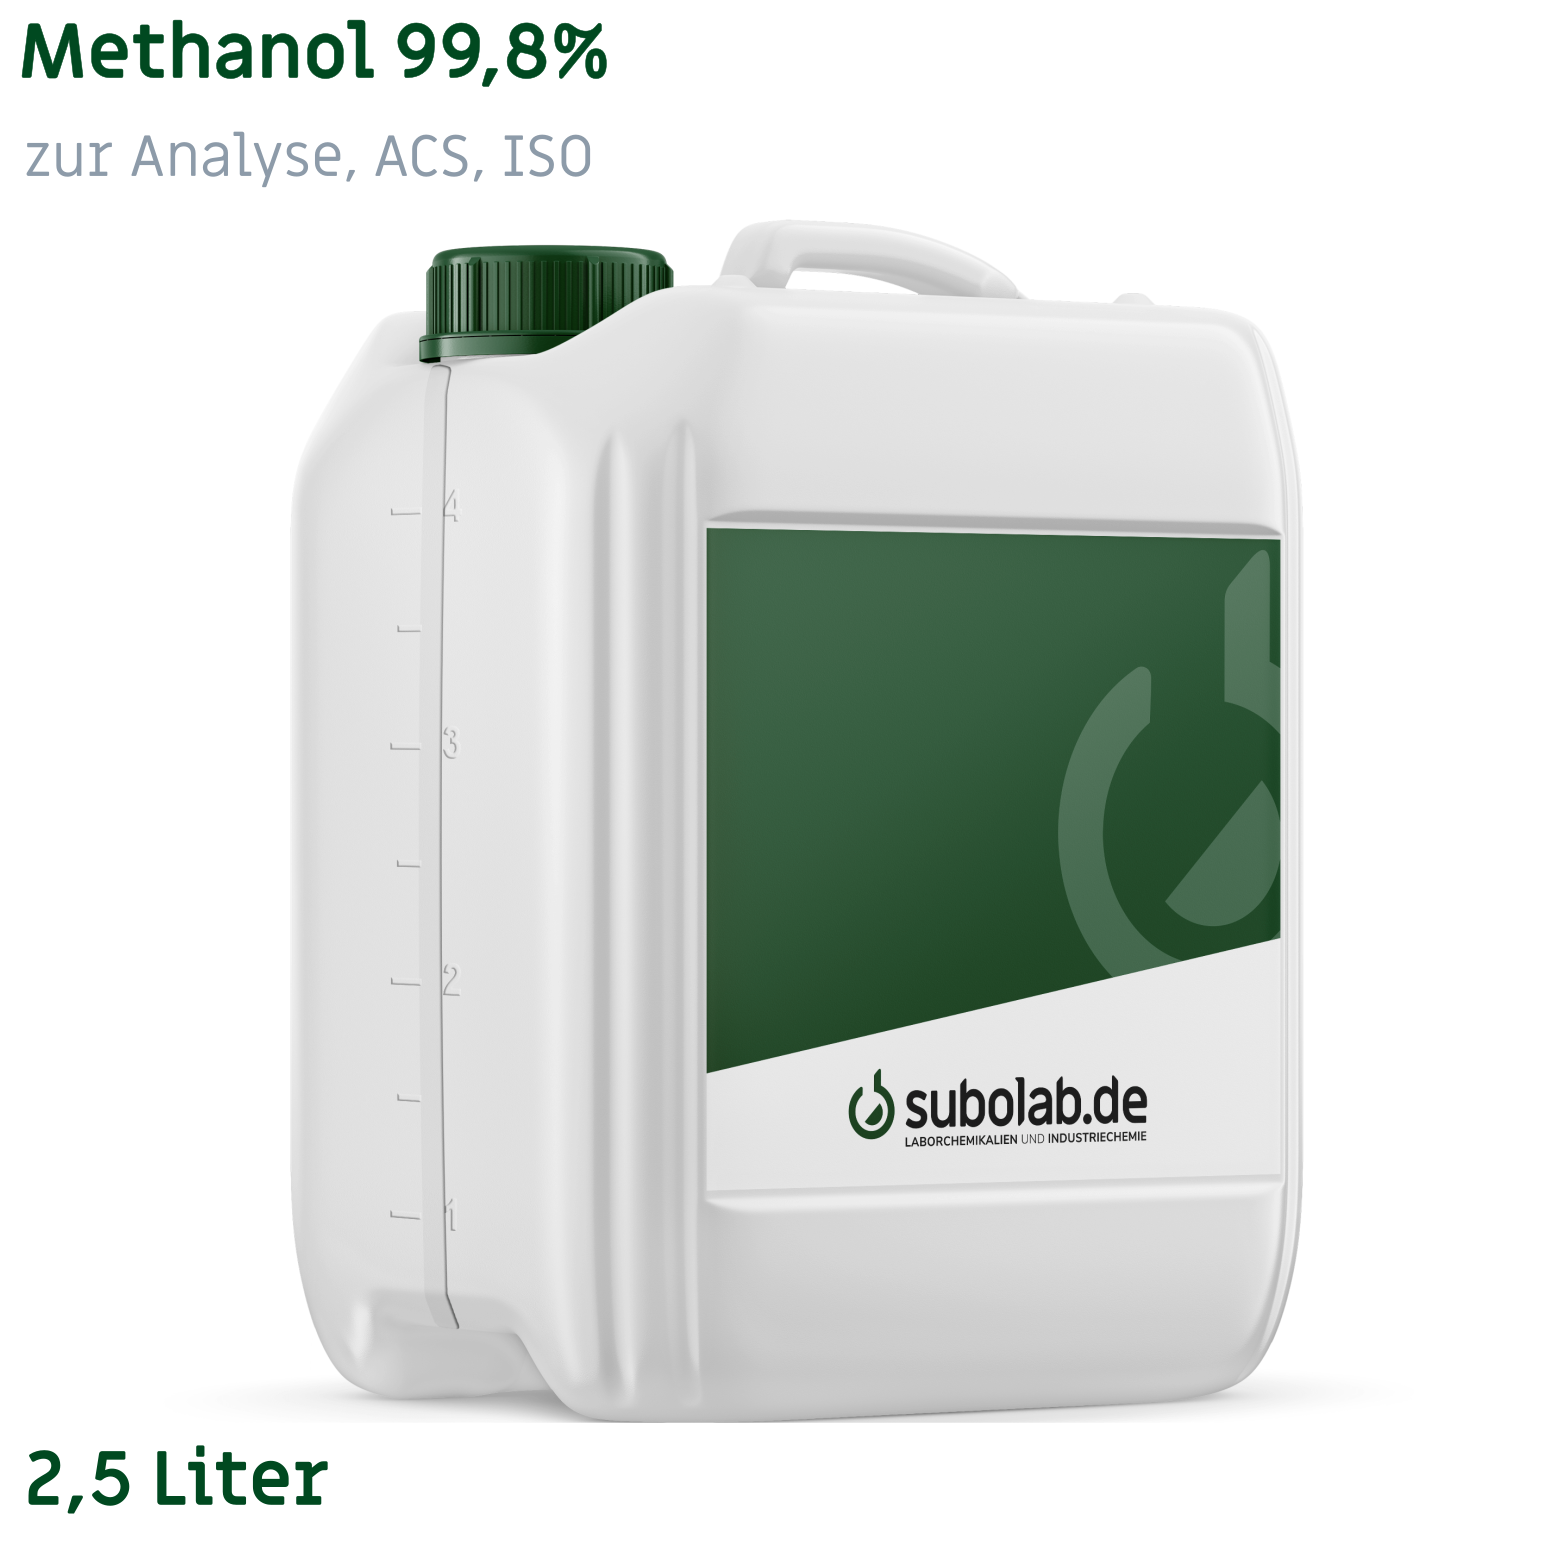 Bild von Methanol 99,8% zur Analyse, ACS, ISO (2,5 Liter)